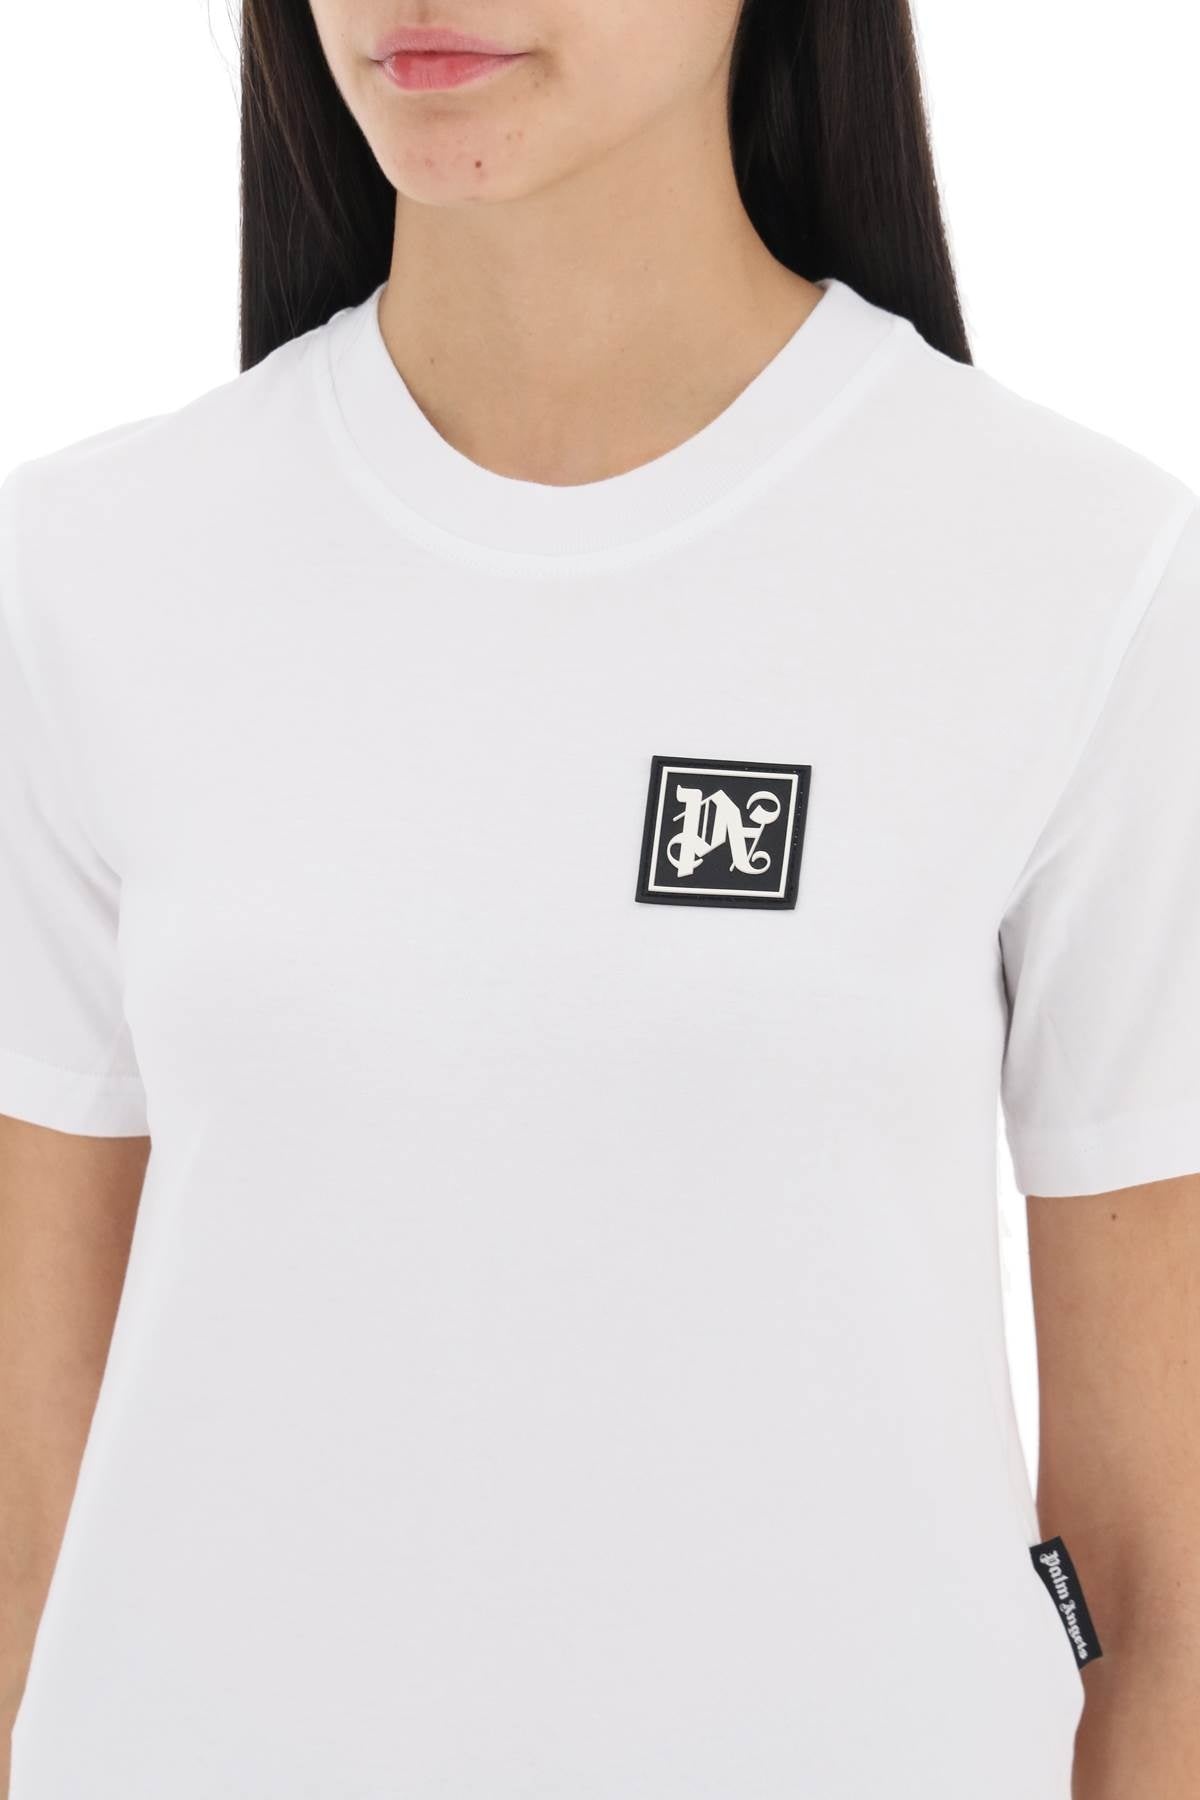 Palm Angels Ski Club T Shirt - 3